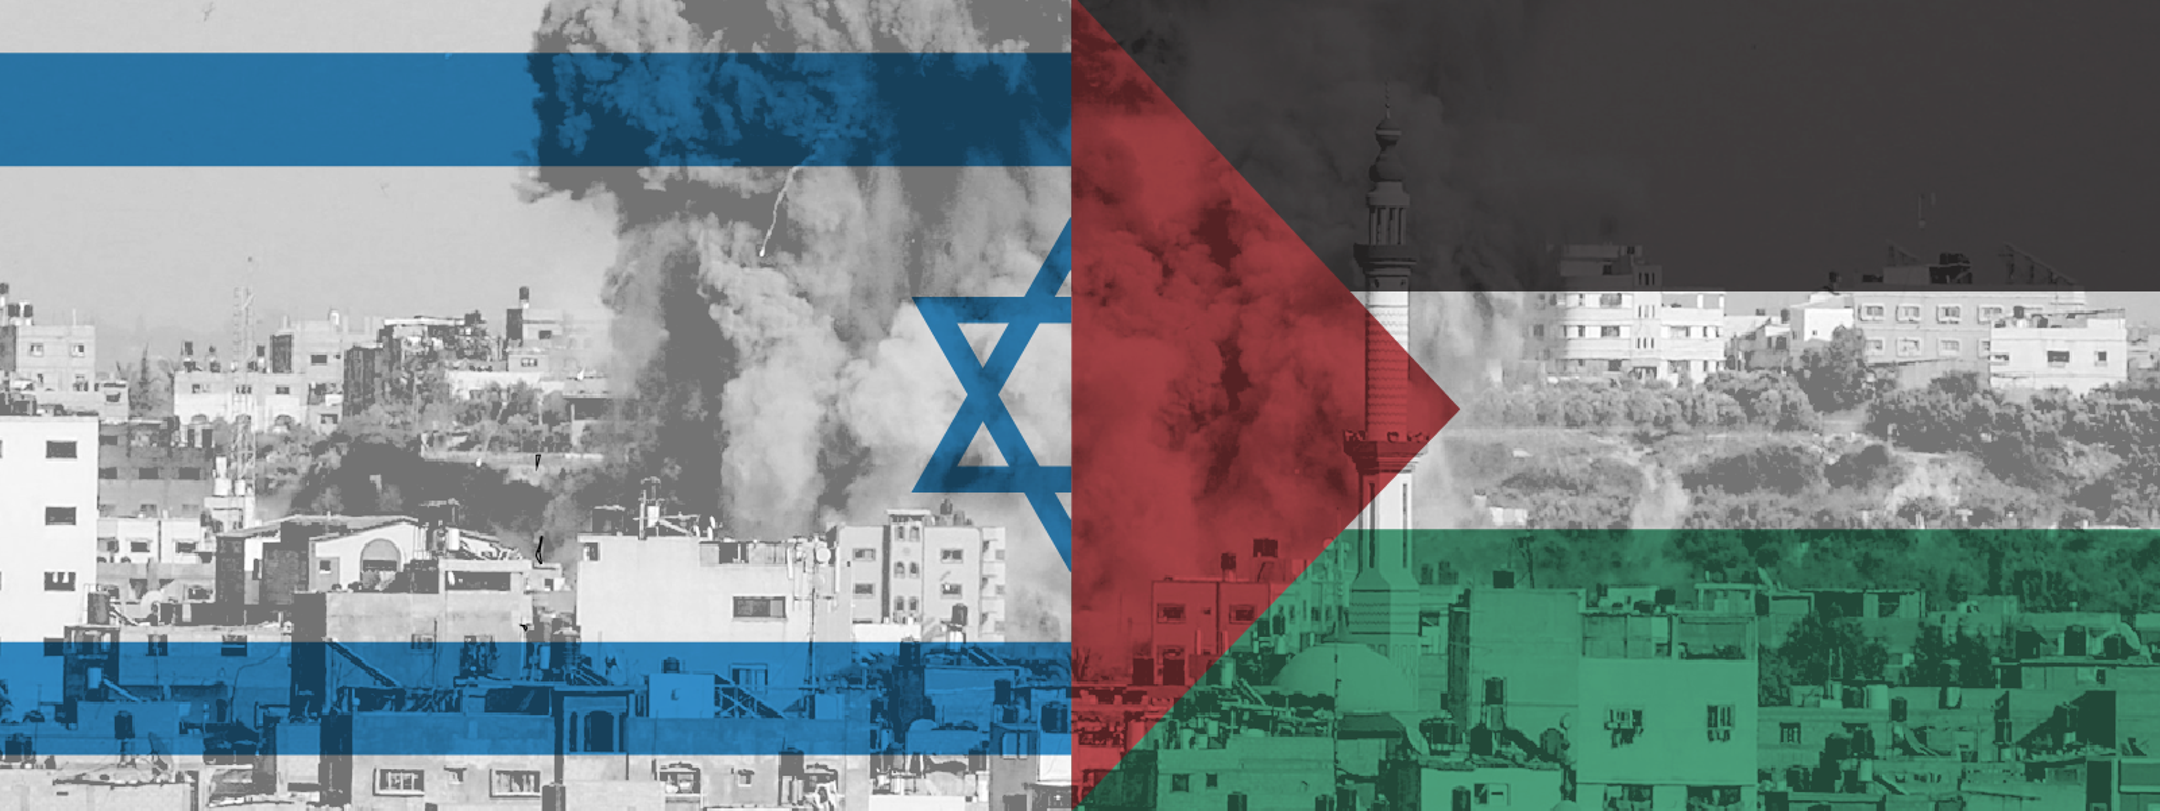 Israel vs palestine 2021